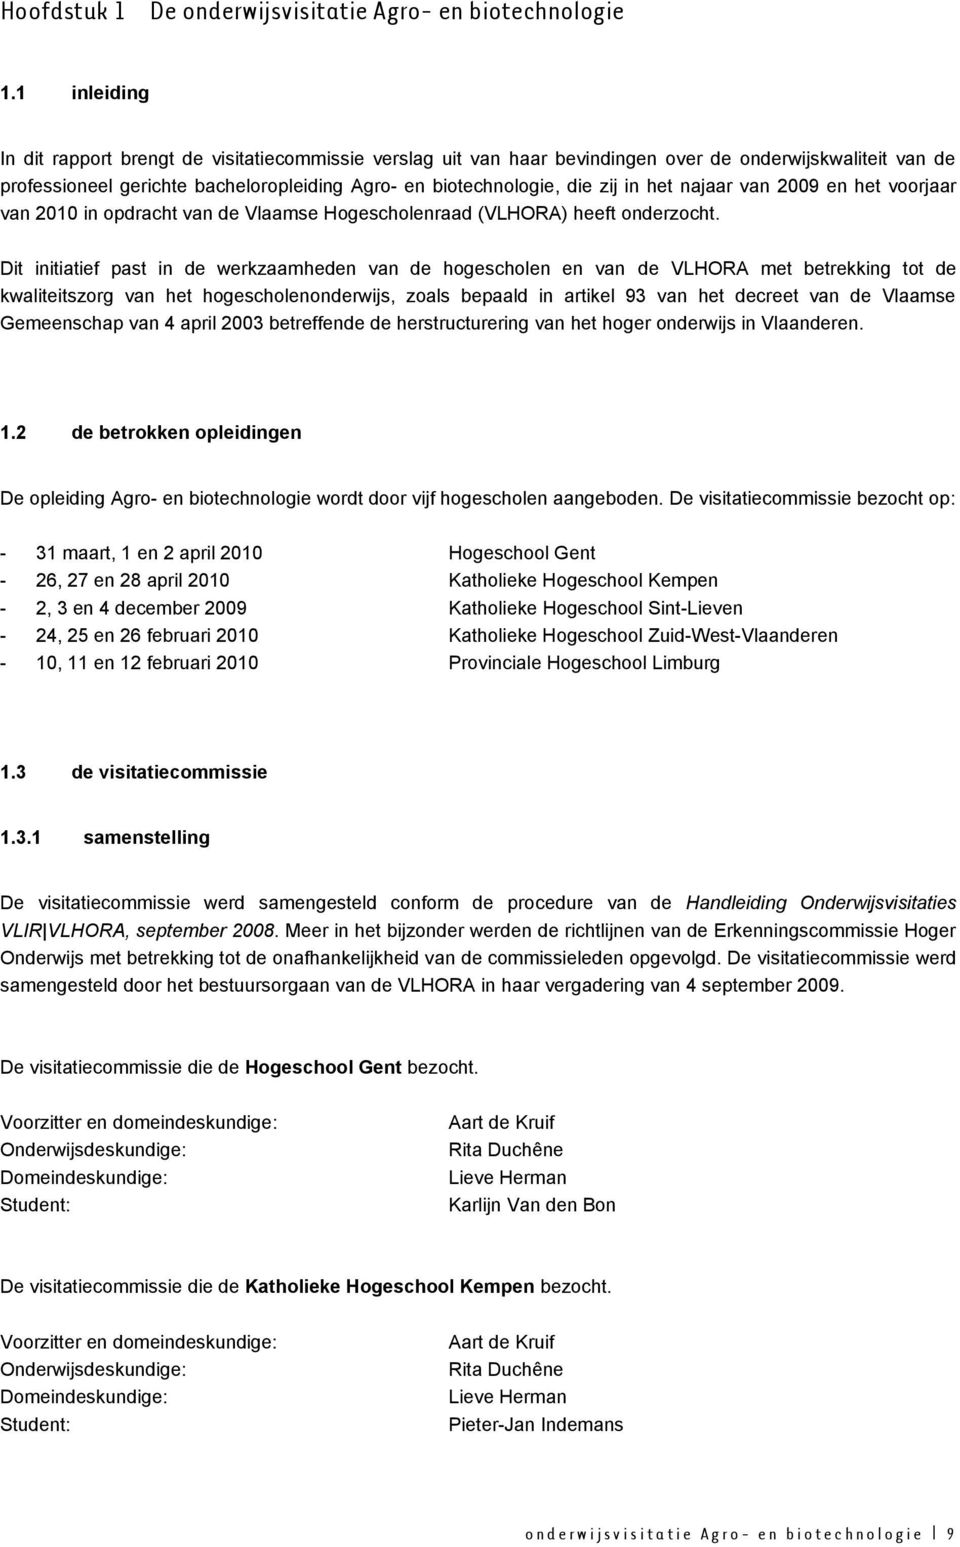 het najaar van 2009 en het voorjaar van 2010 in opdracht van de Vlaamse Hogescholenraad (VLHORA) heeft onderzocht.